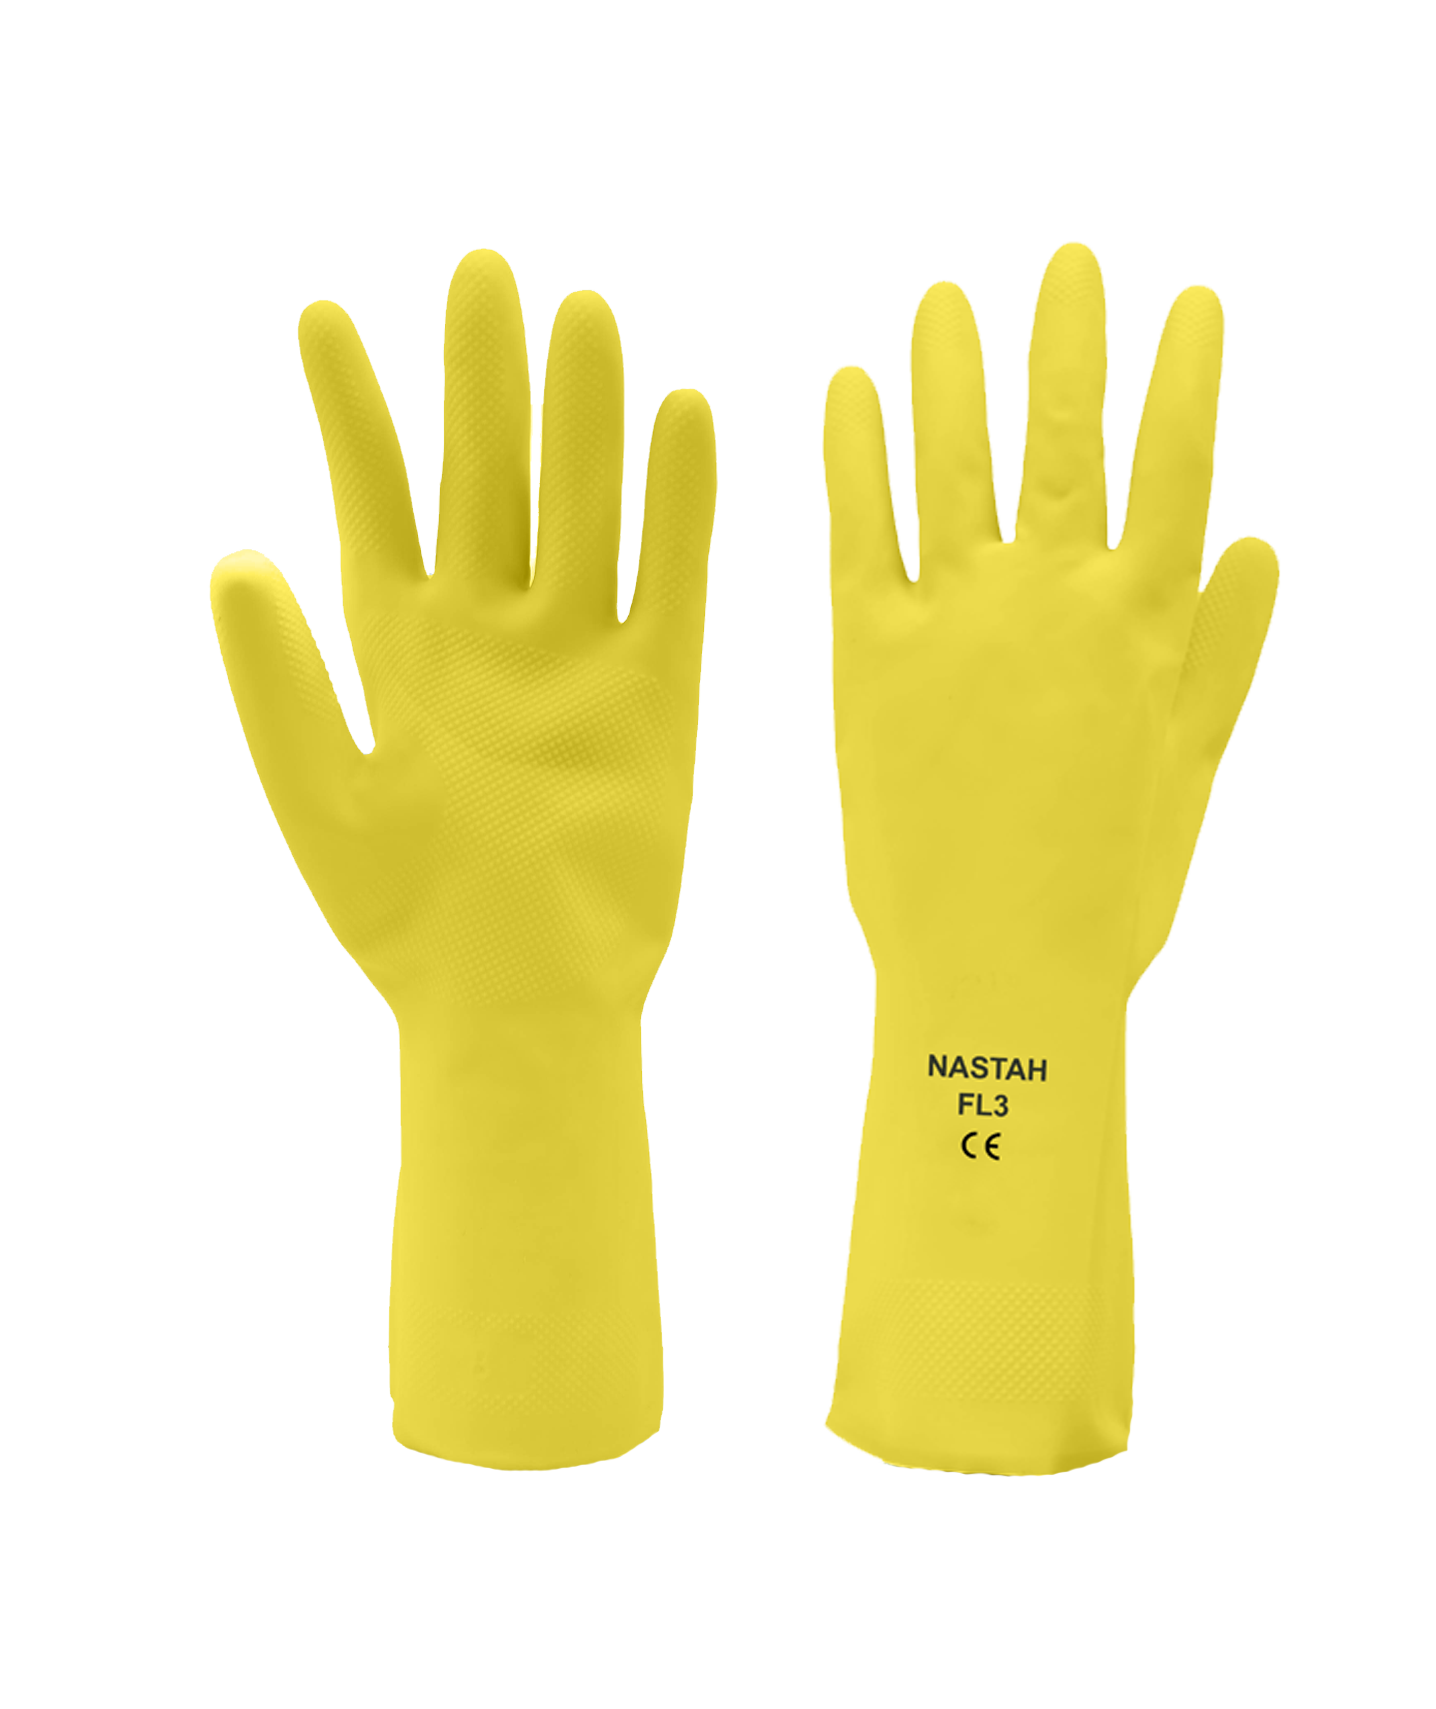 Nastah lemon yellow gloves LYFL3